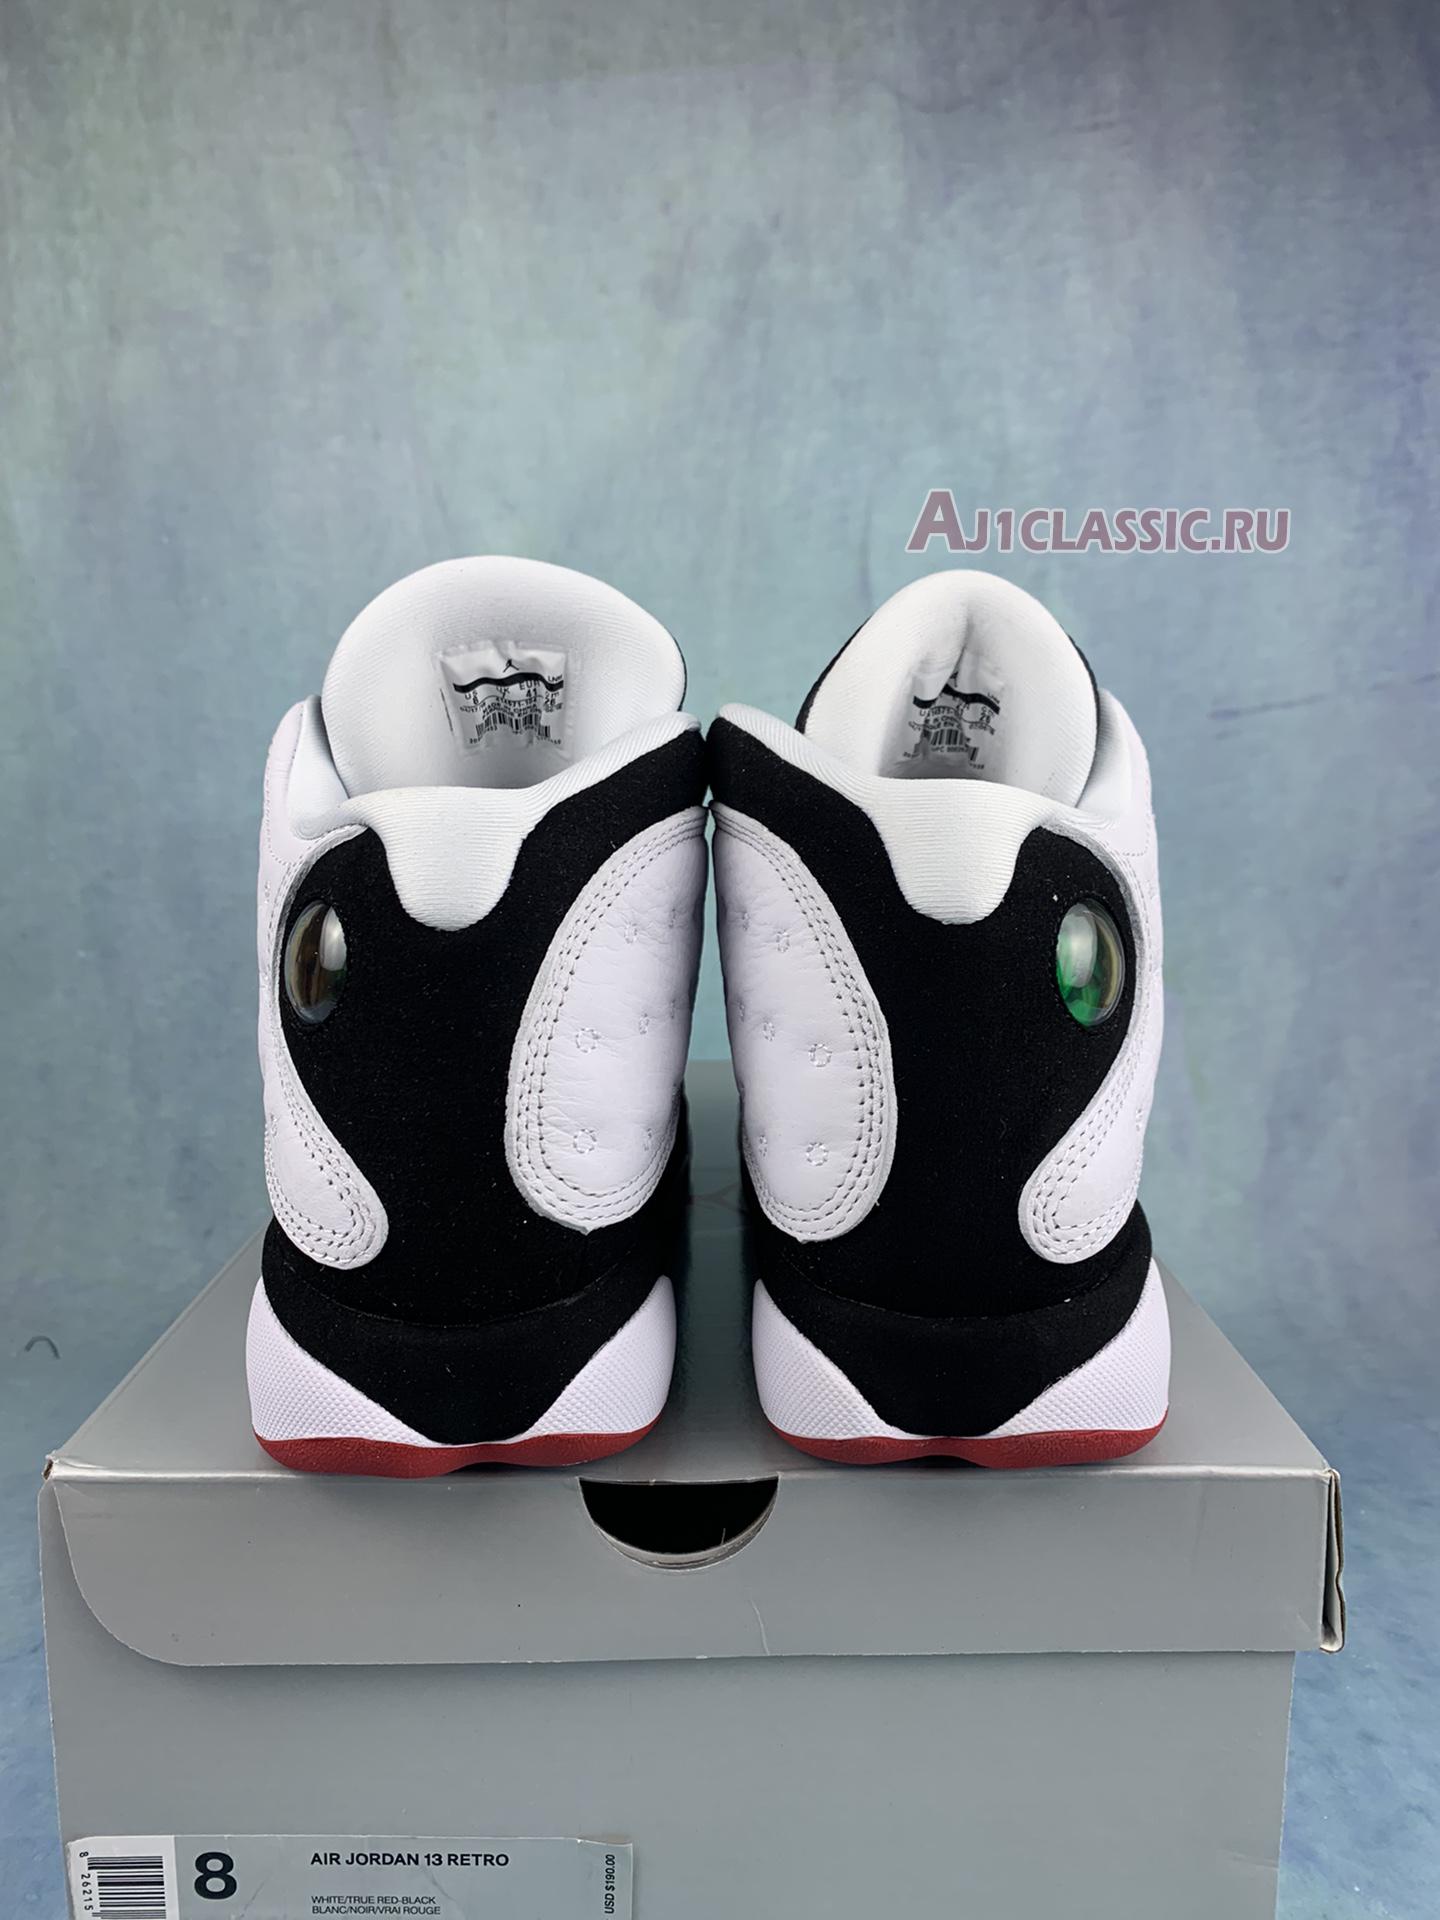 Air Jordan 13 Retro "He Got Game" 414571-104-2